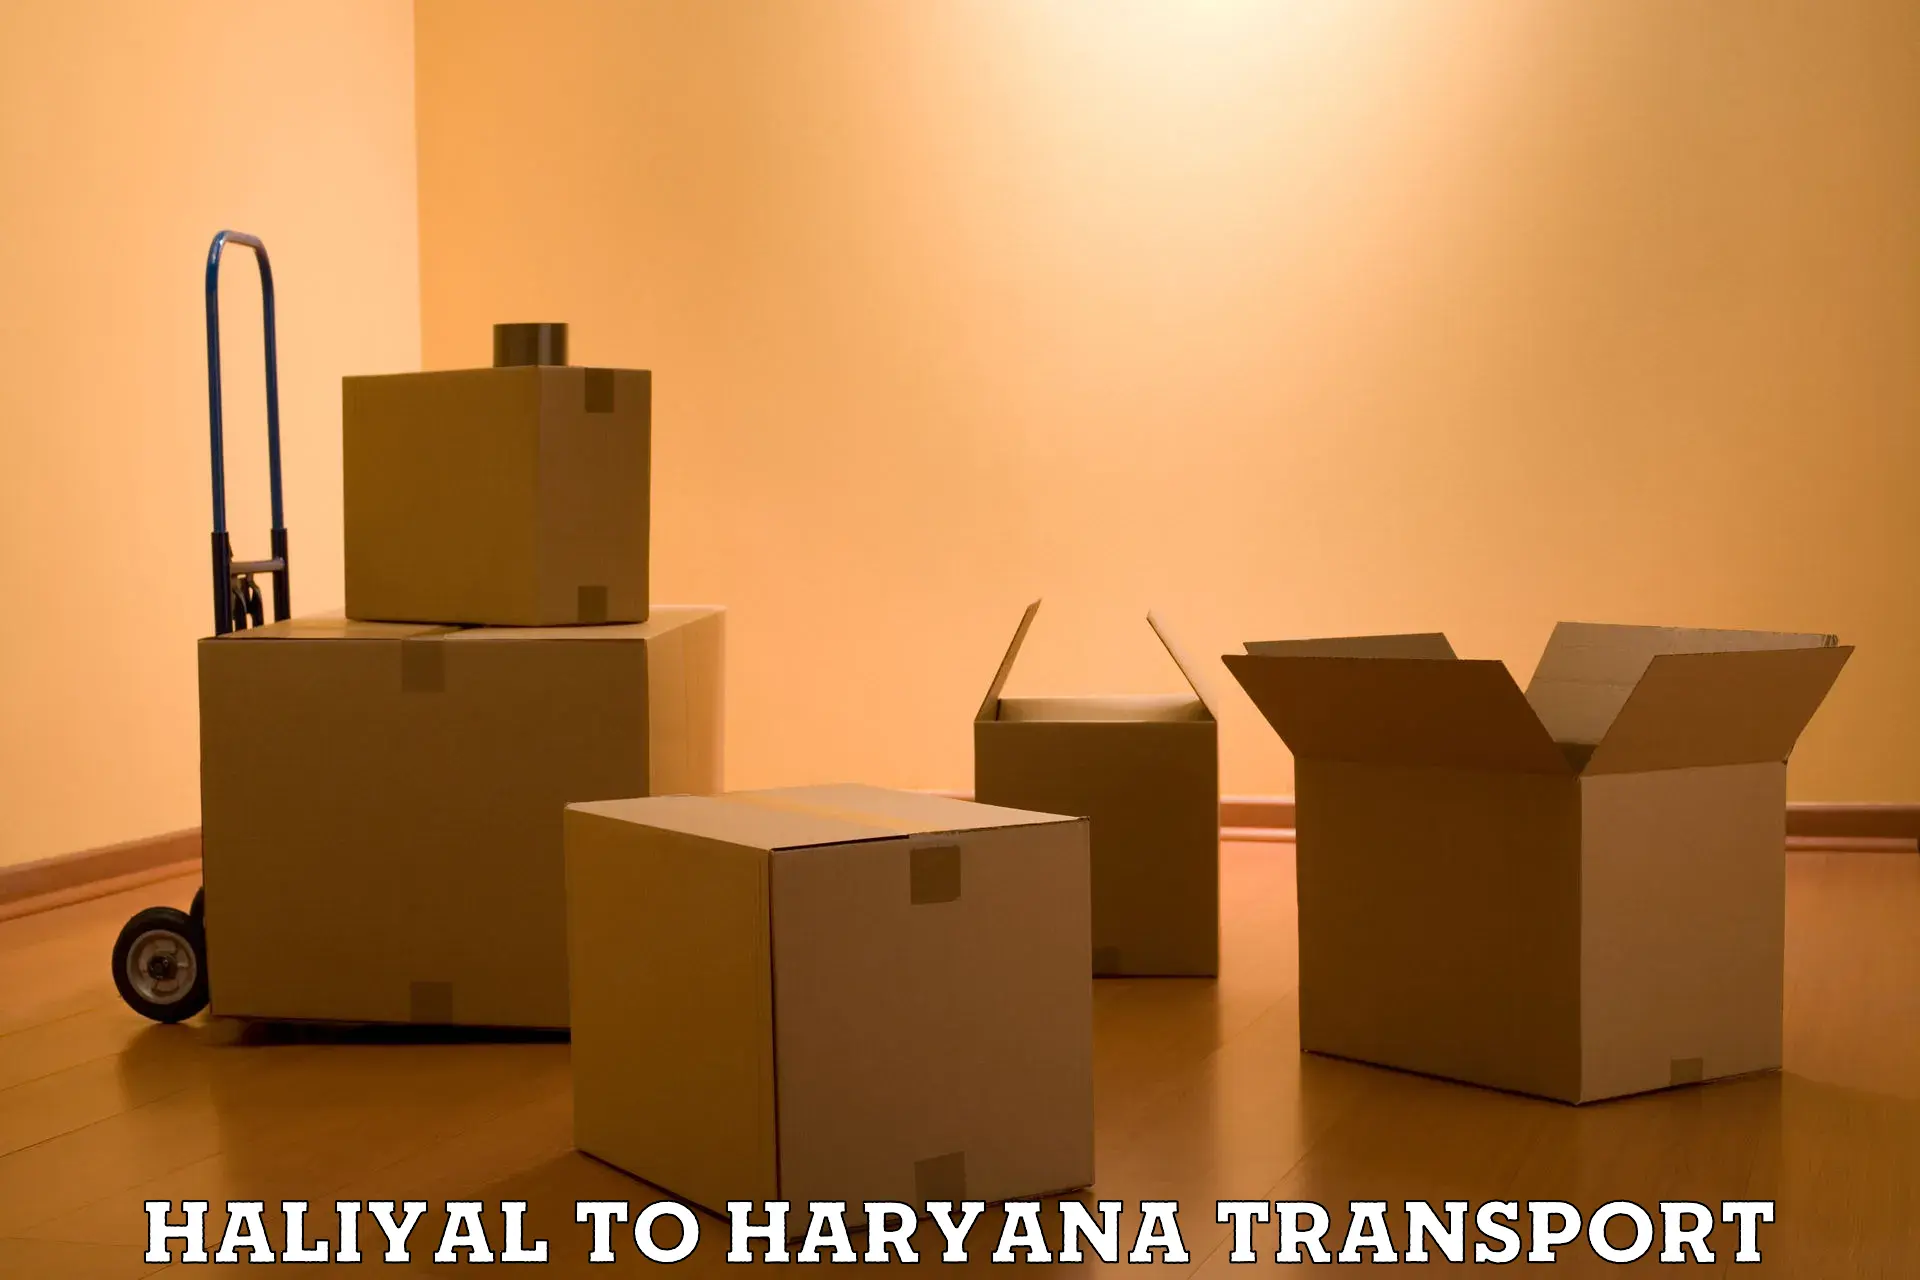 Furniture transport service Haliyal to Kurukshetra